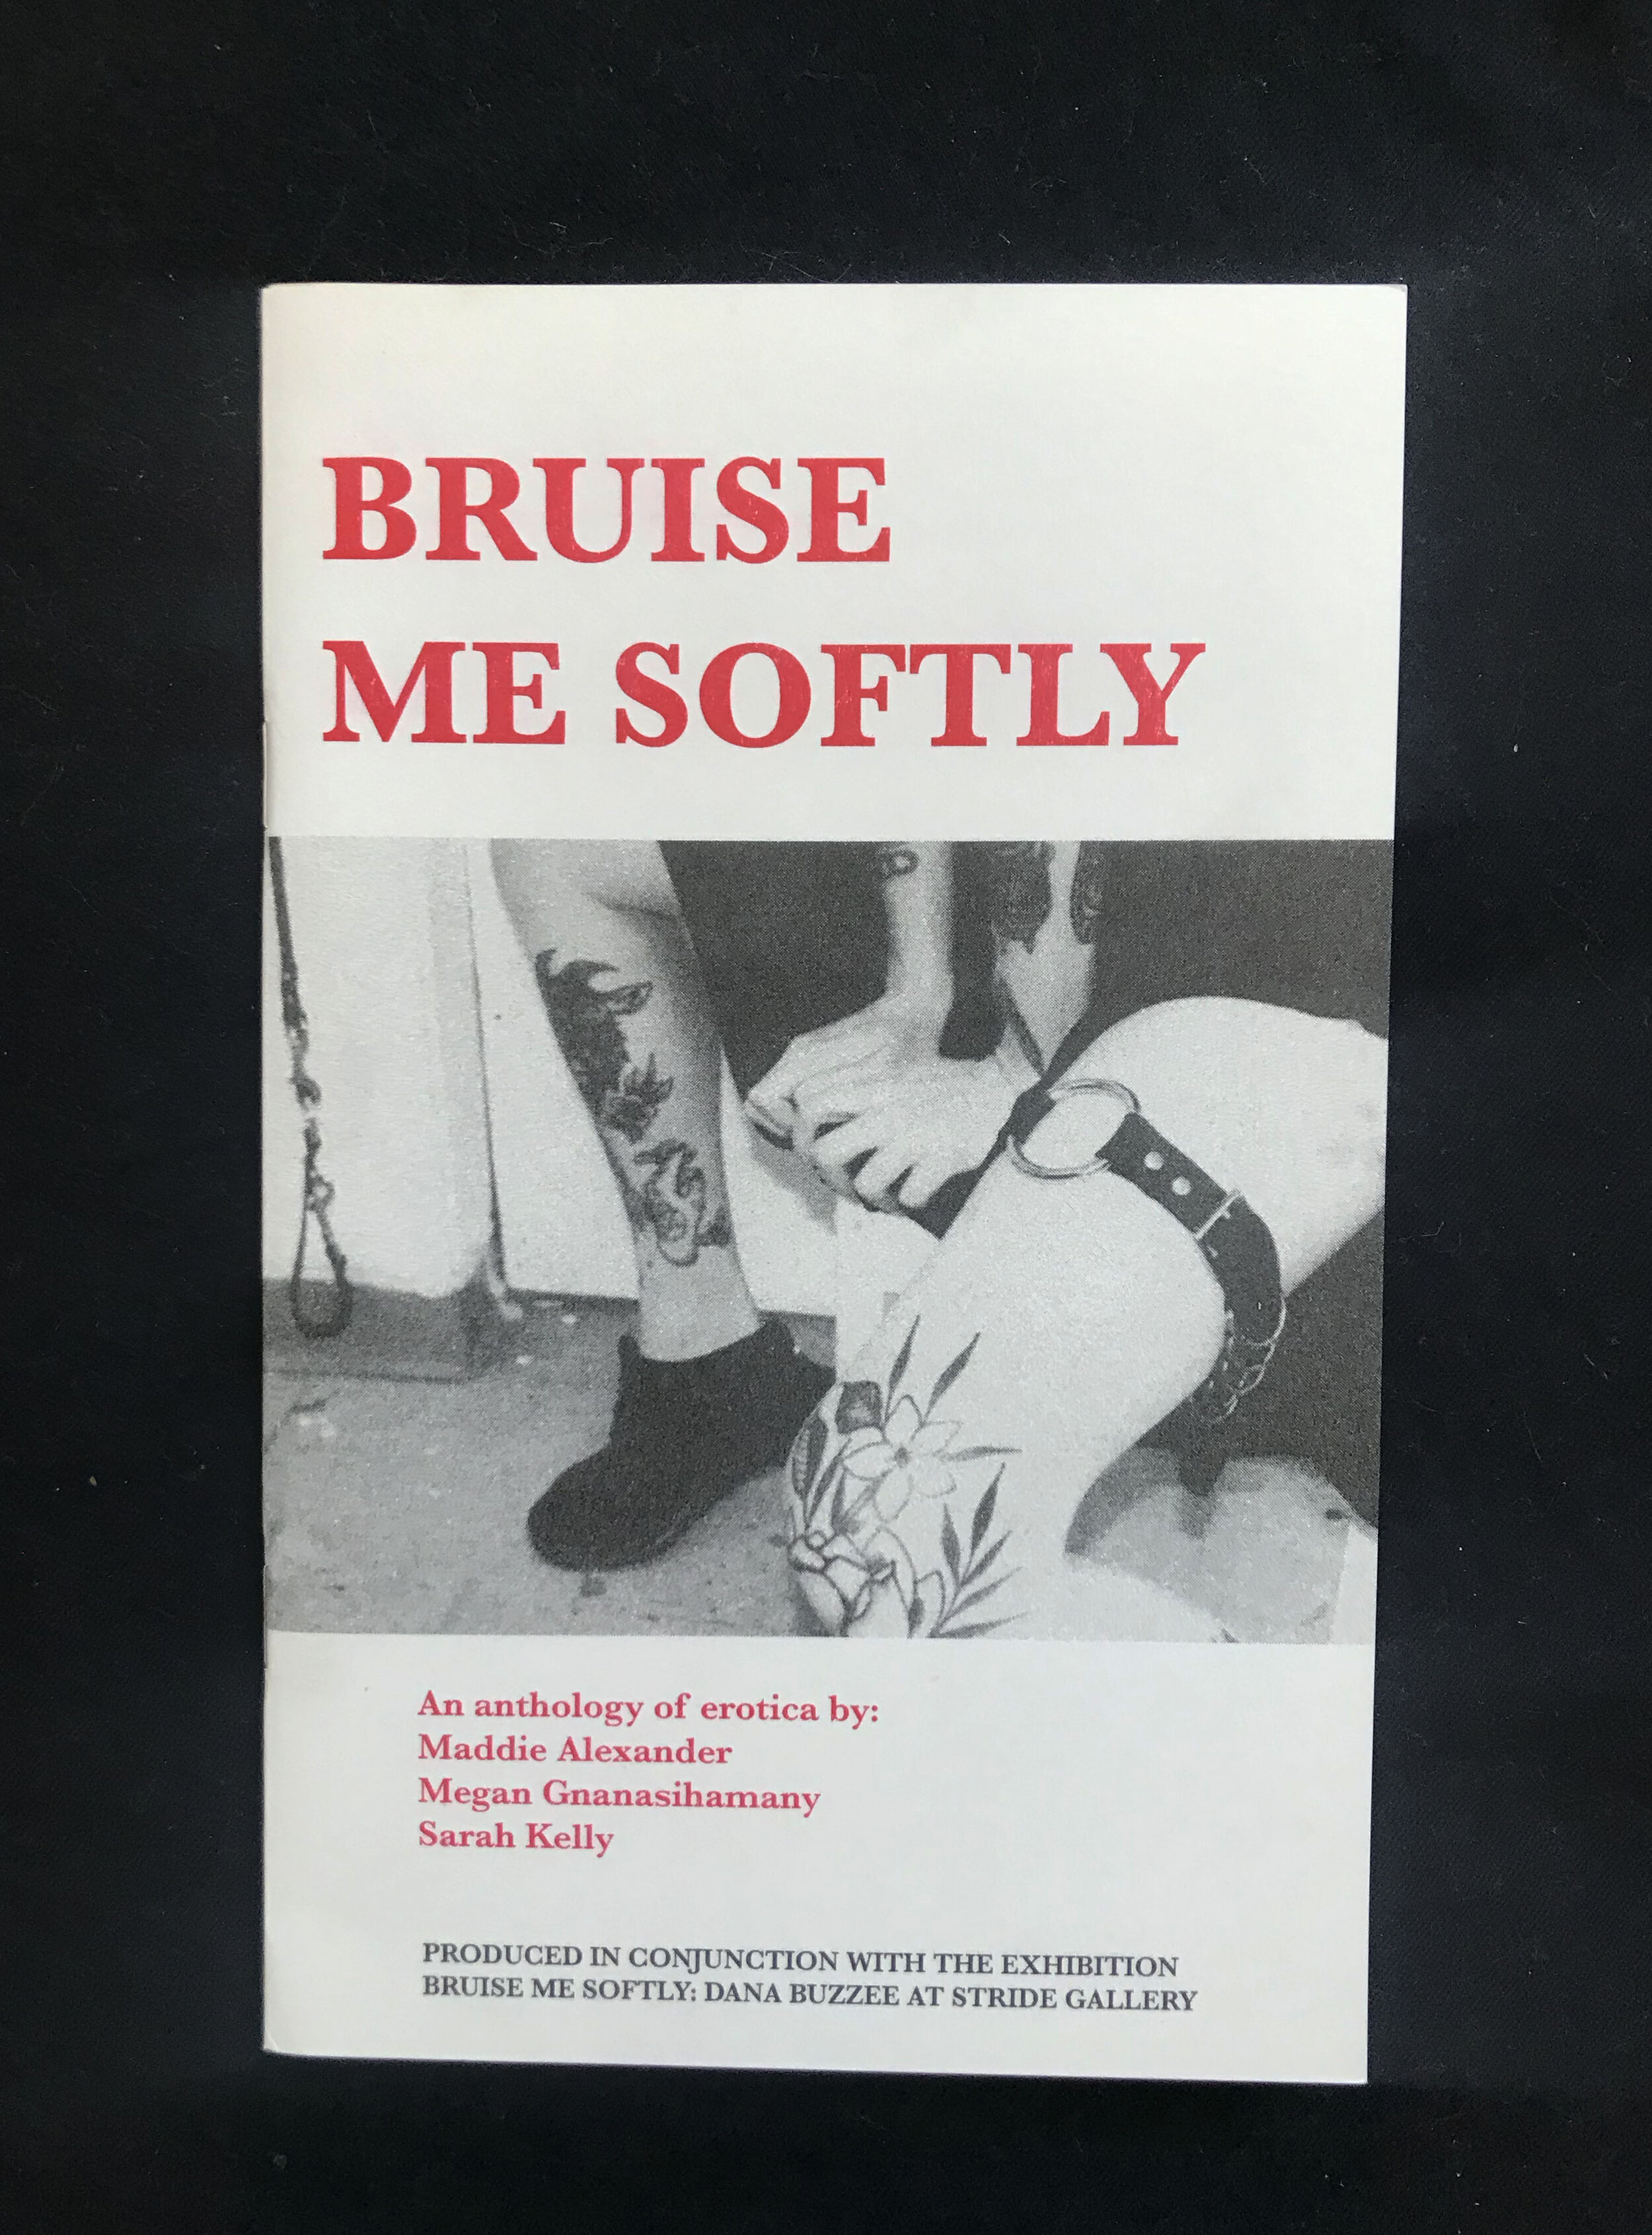 Bruise Me Softly